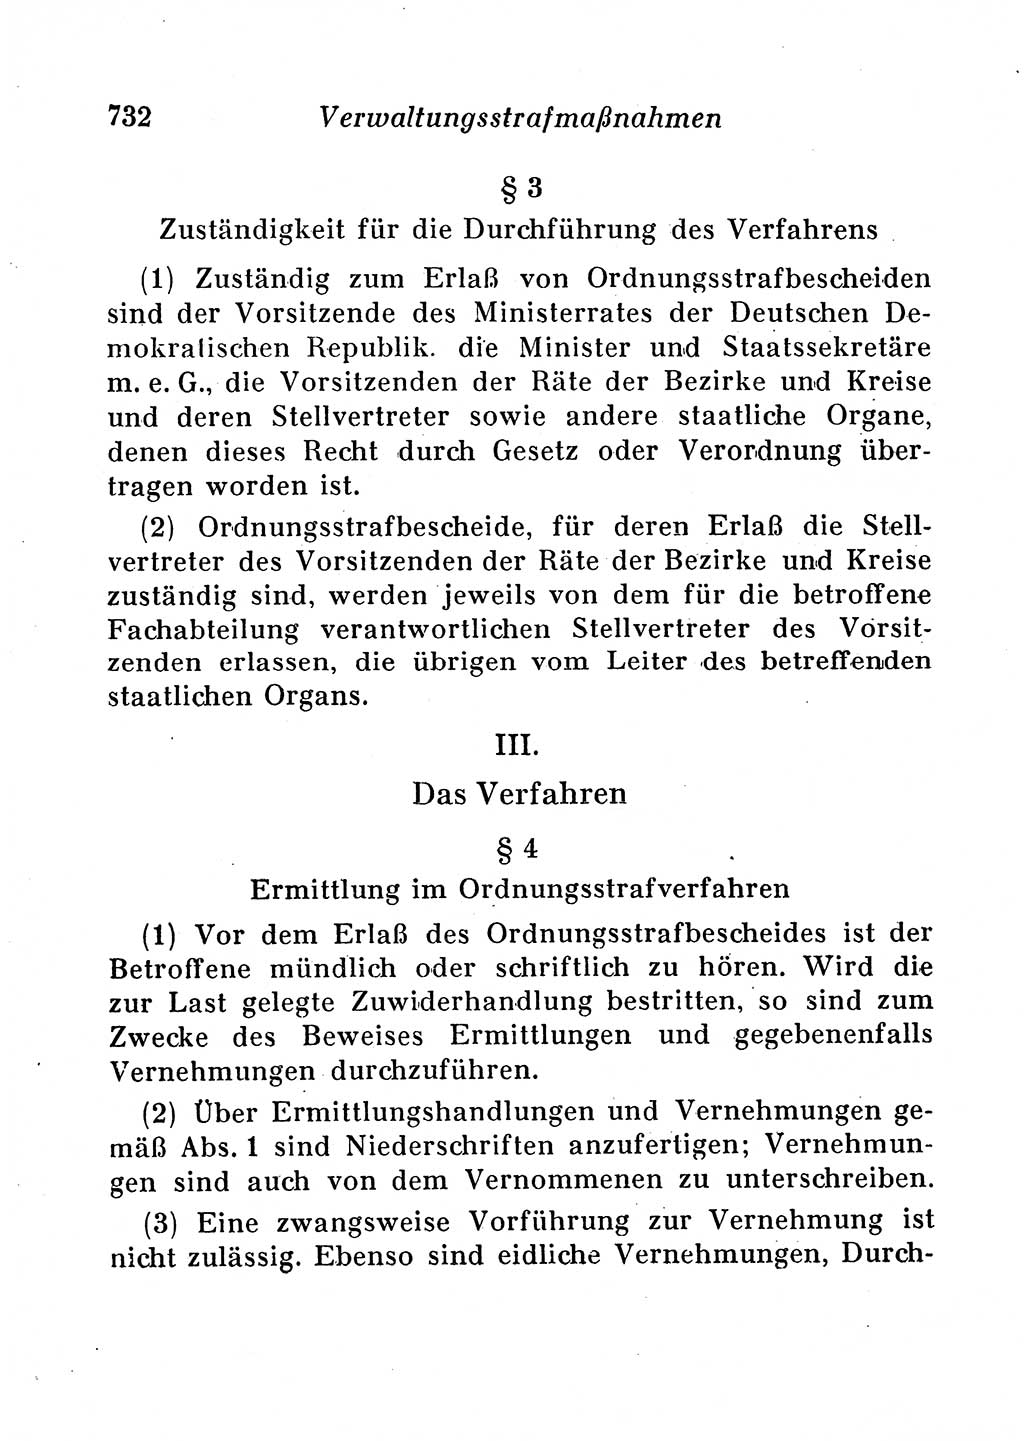 Staats- und verwaltungsrechtliche Gesetze der Deutschen Demokratischen Republik (DDR) 1958, Seite 732 (StVerwR Ges. DDR 1958, S. 732)